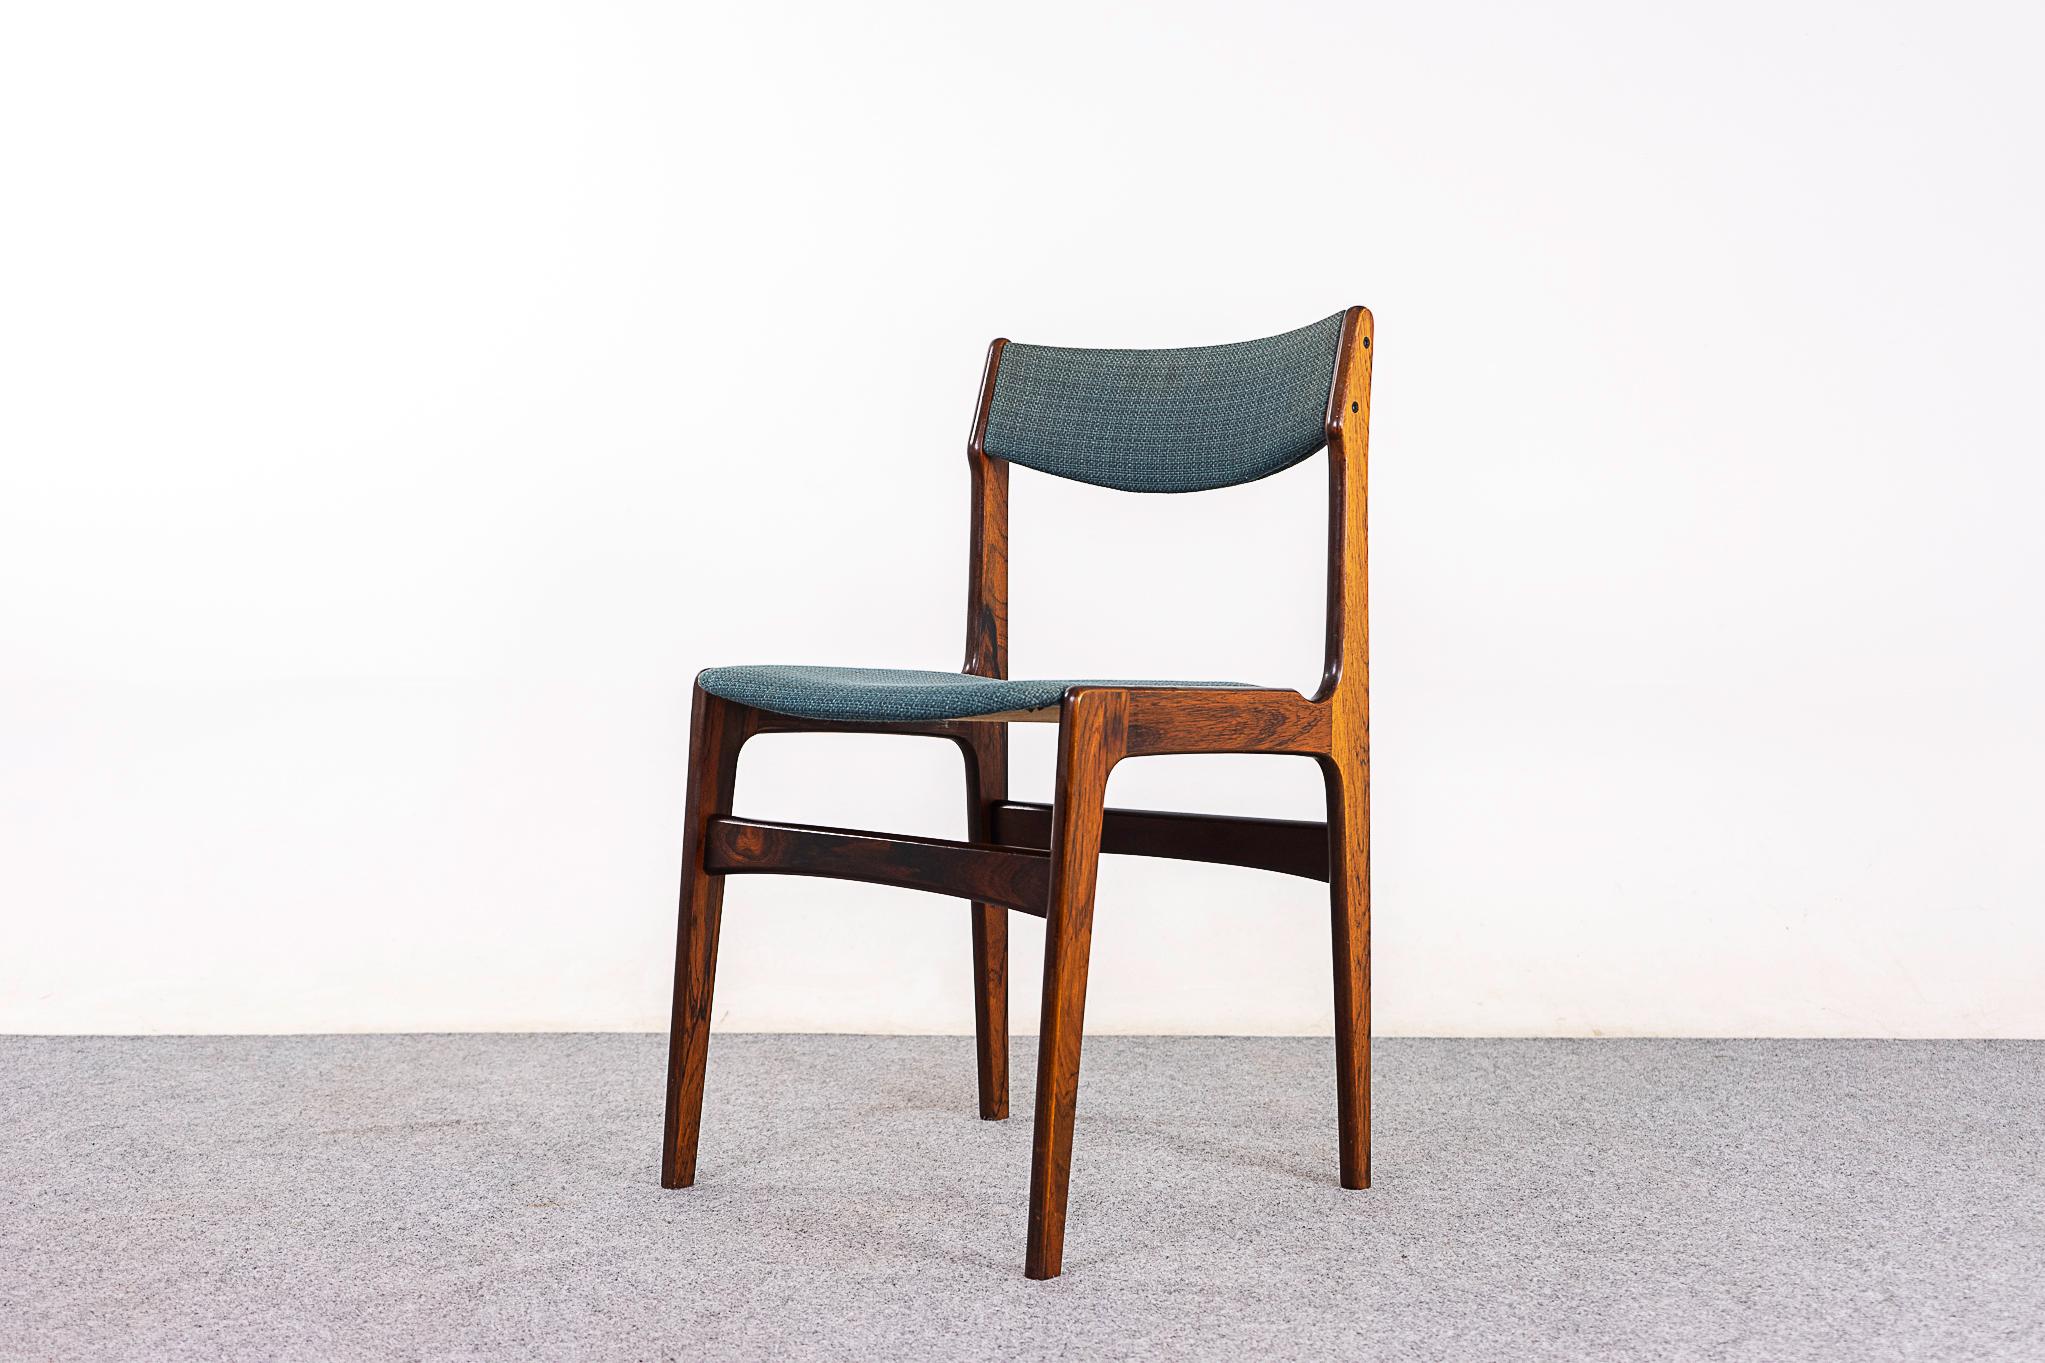 Esszimmerstühle aus Rosenholz aus der Mitte des Jahrhunderts, CIRCA 1960er Jahre. Schöne Maserungen auf den Furnierrahmen, robust und doch elegant. Schön geschwungene Rückenlehnen und großzügige Sitzfläche. Original-Stoff mit erheblichen Verschleiß,